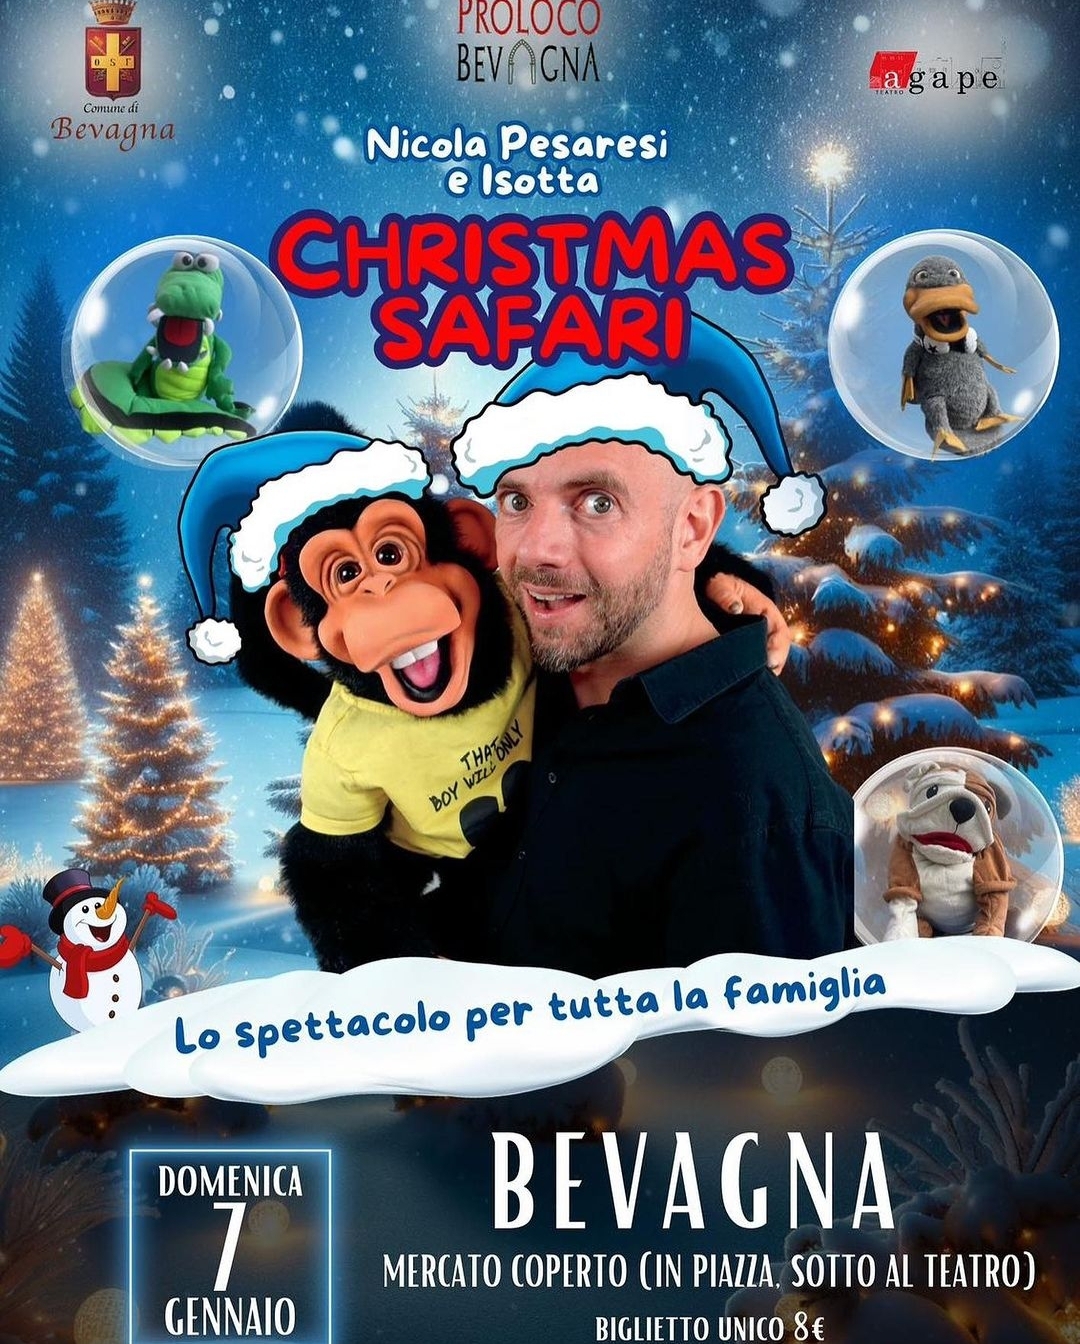 ChristmasSafari_Bevagna